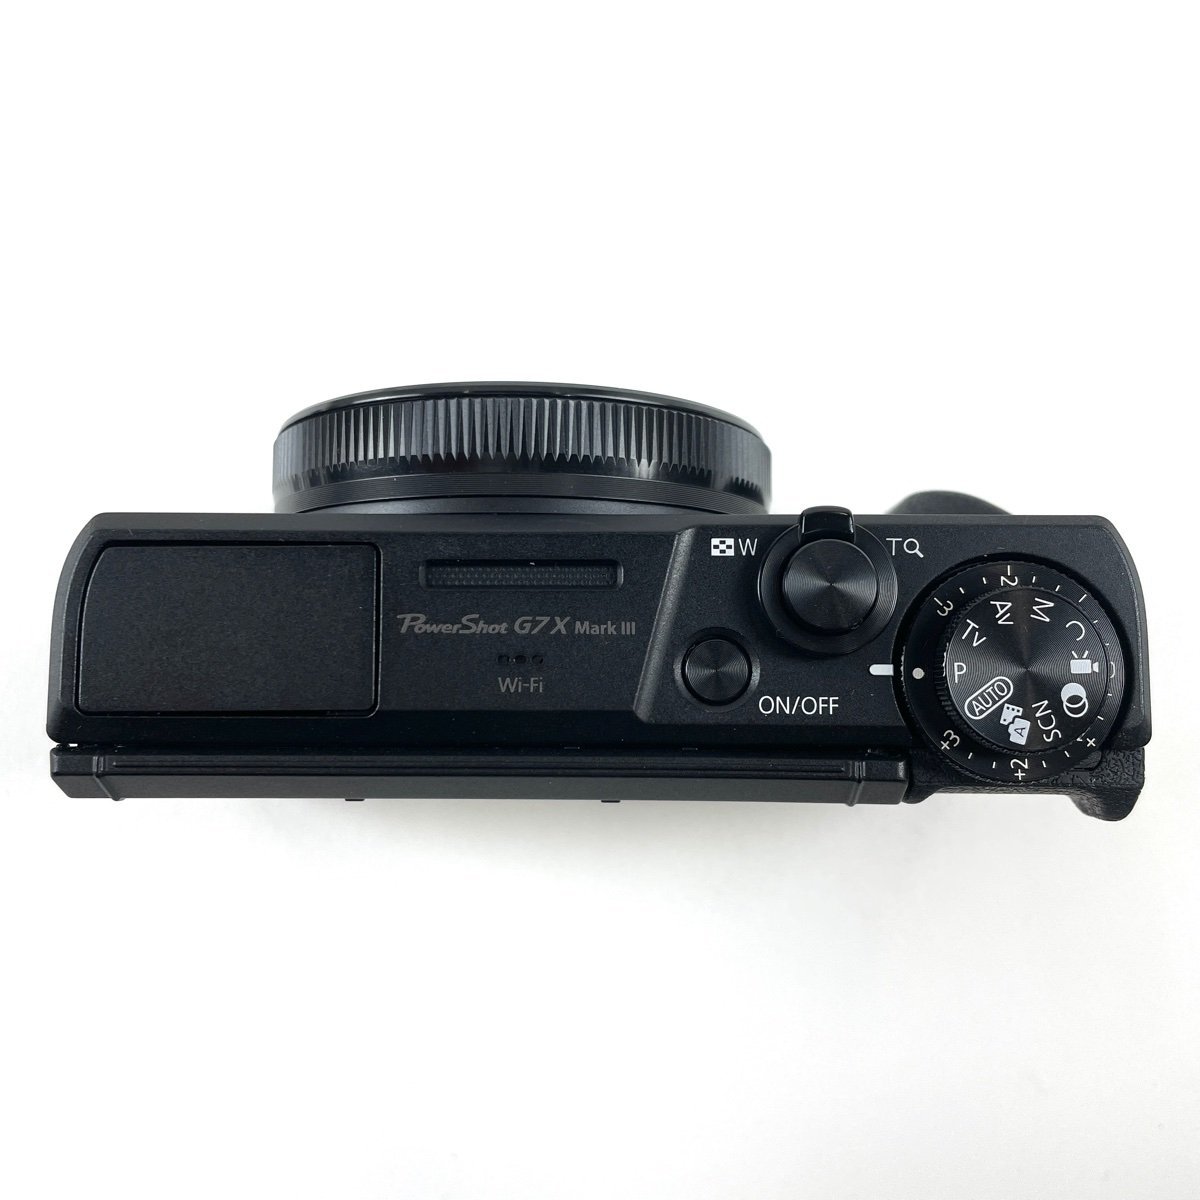 キヤノン Canon PowerShot G7X Mark III コンパクトデジタルカメラ